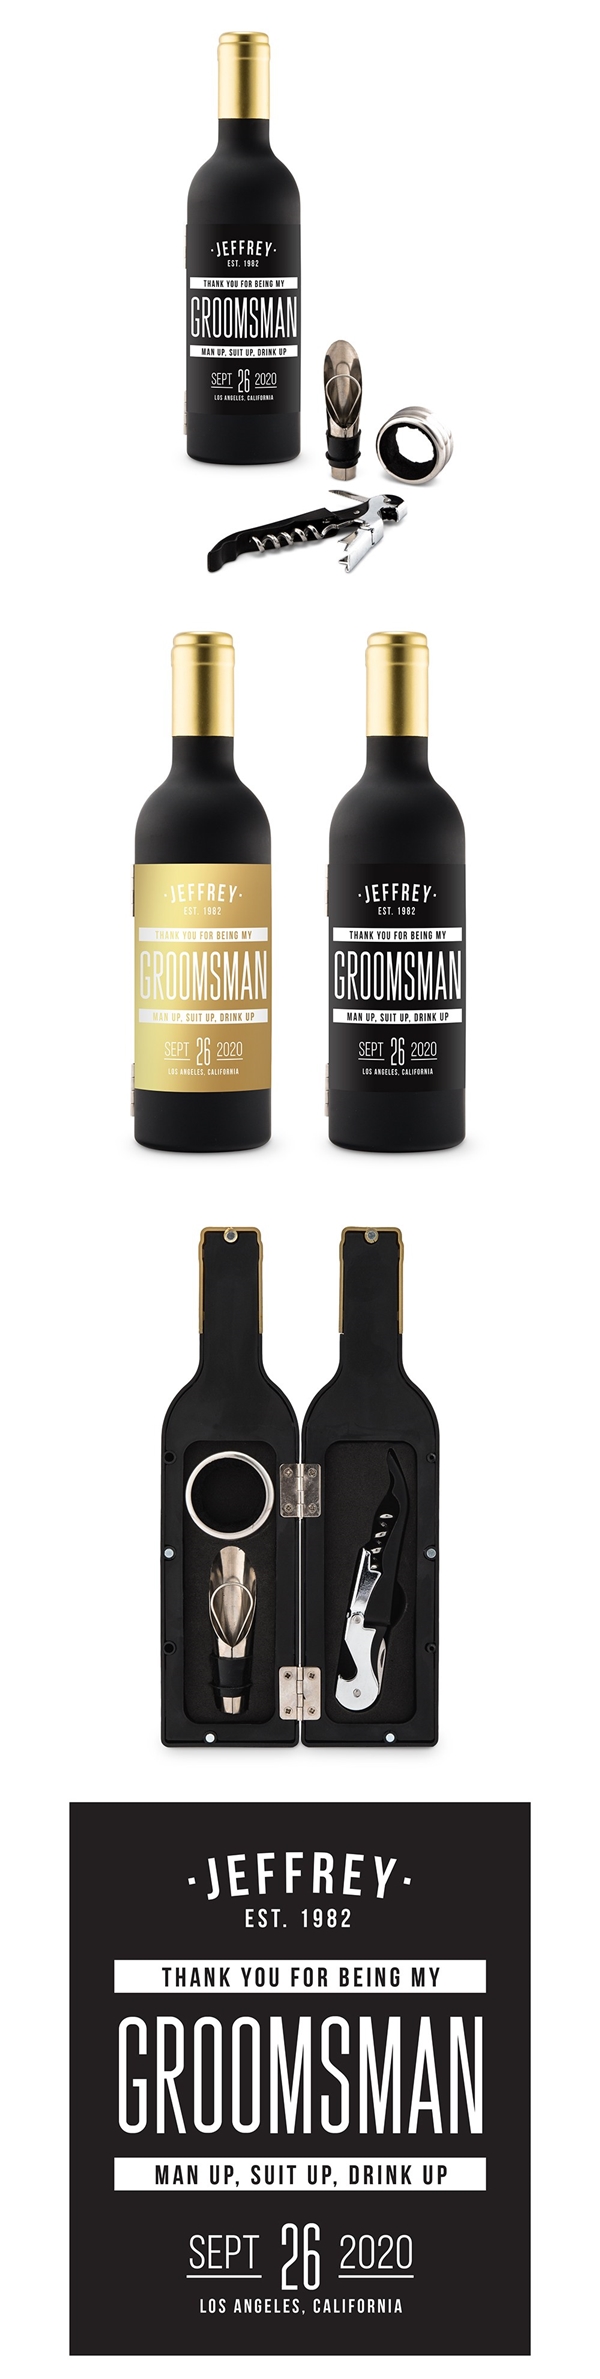 Wine Bottle-Shaped Corkscrew Gift Set w/ Personalized Groomsman Label